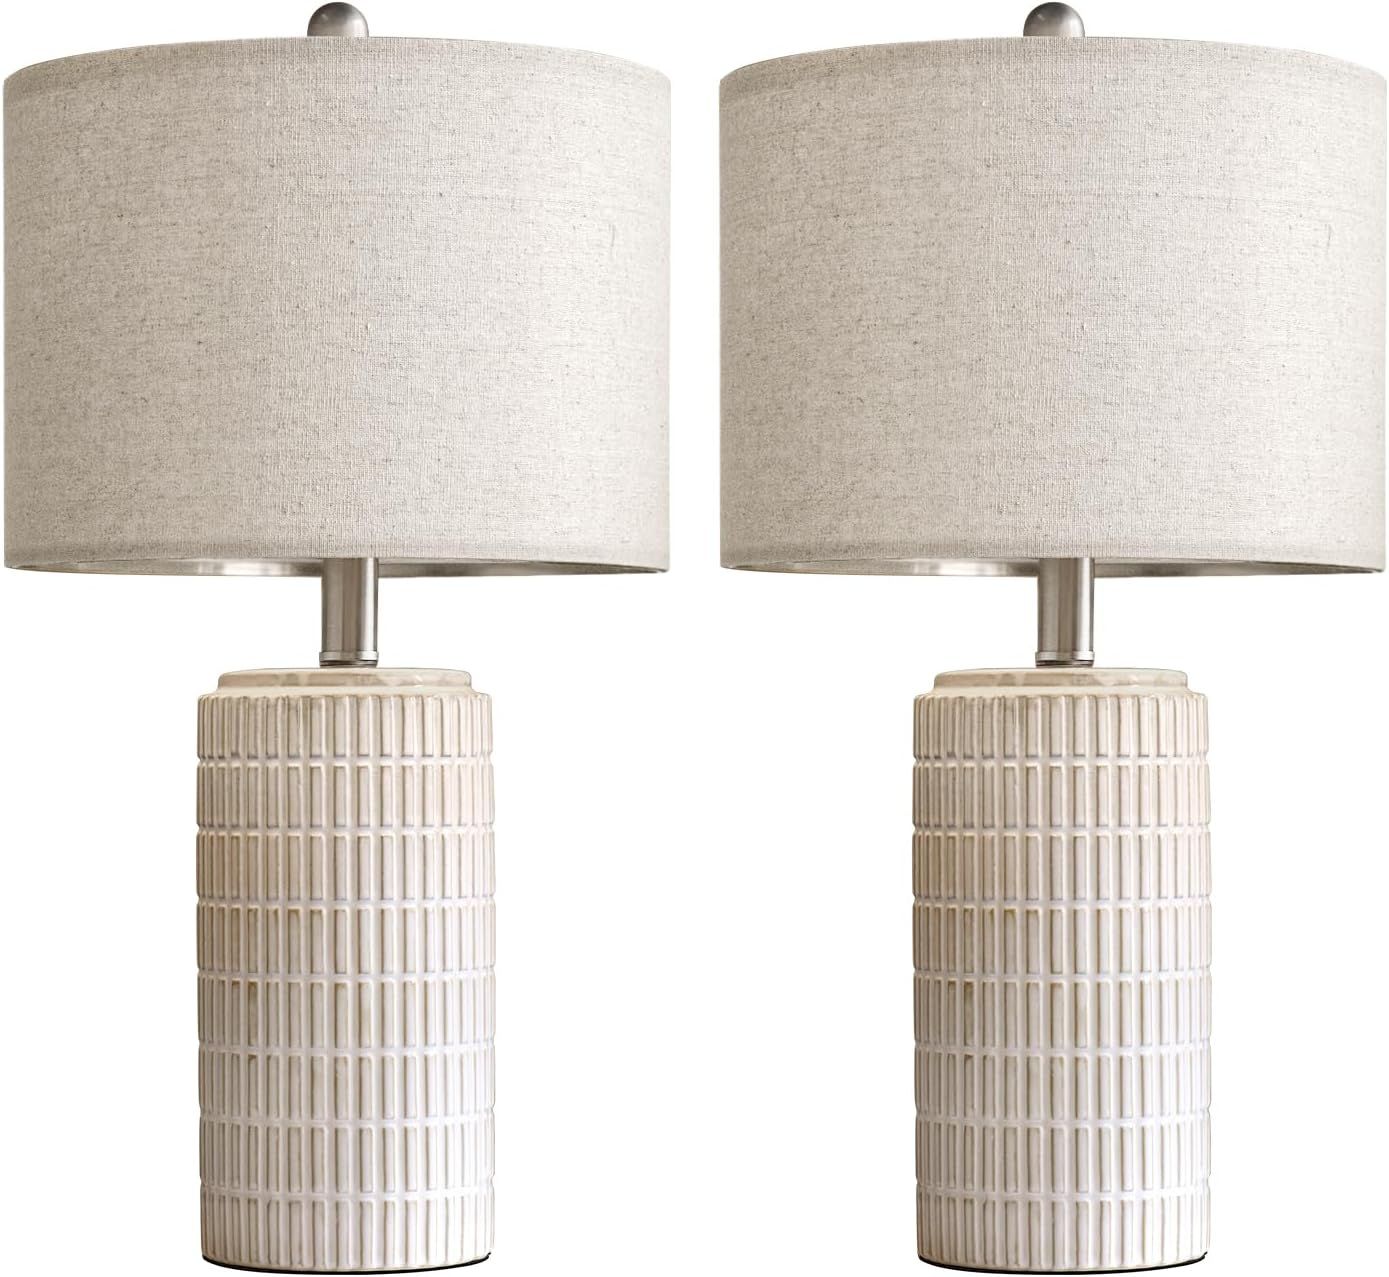 PoKat 23" Modern Ceramic Table Lamp Set of 2 for Living Room White Desk Lamps for Bedroom Farmhou... | Amazon (US)